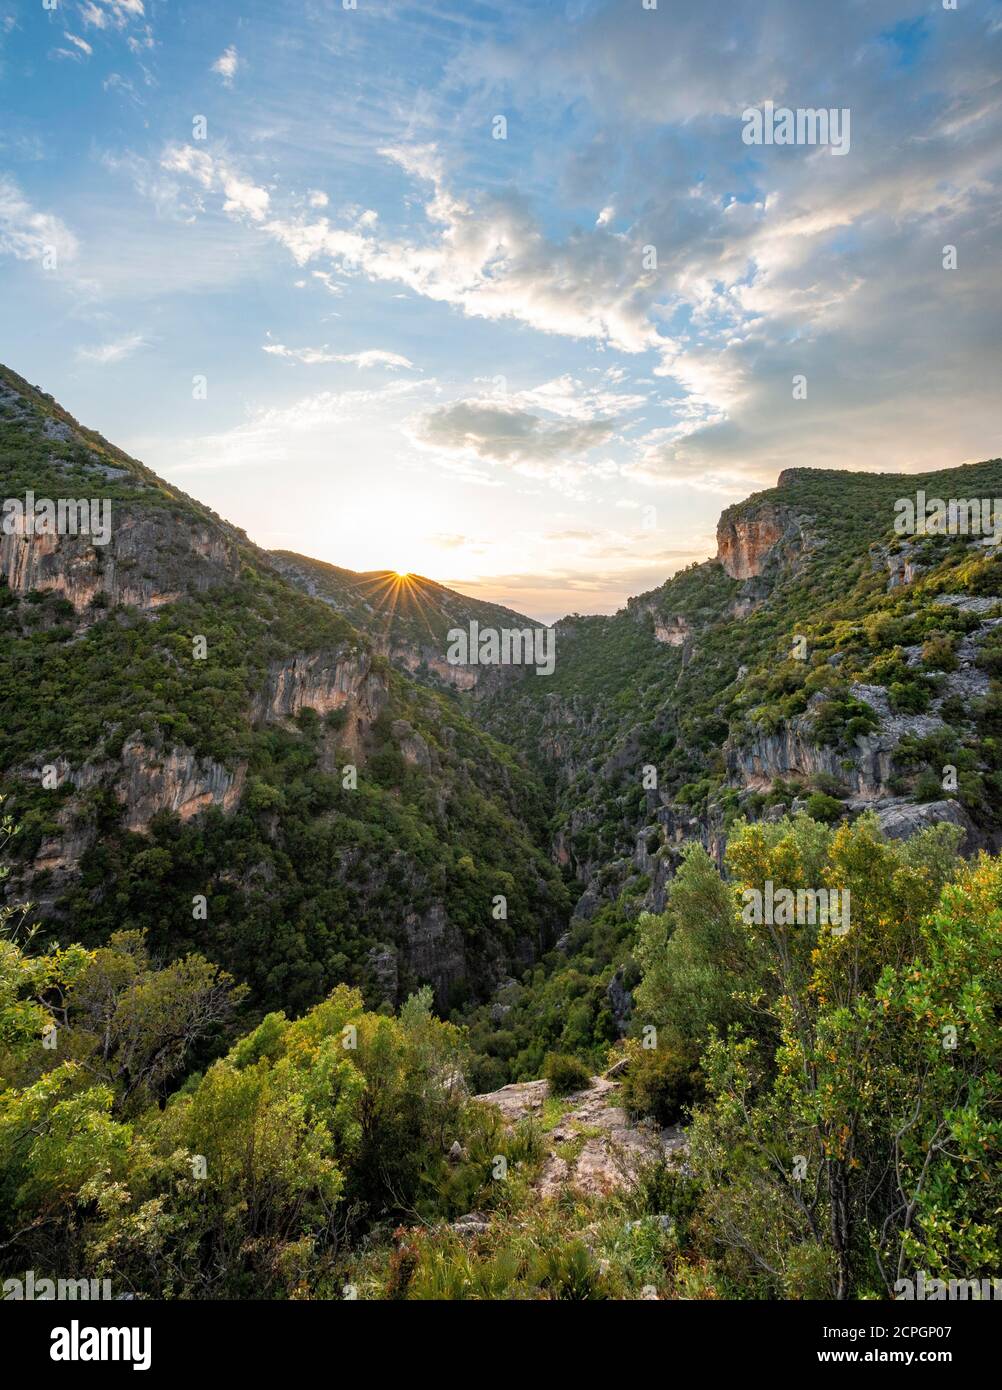 Pentes boisées, gorge verte, Garganta Verde, coucher de soleil, Sierra de Cadix, province de Cadix, Espagne, Europe Banque D'Images